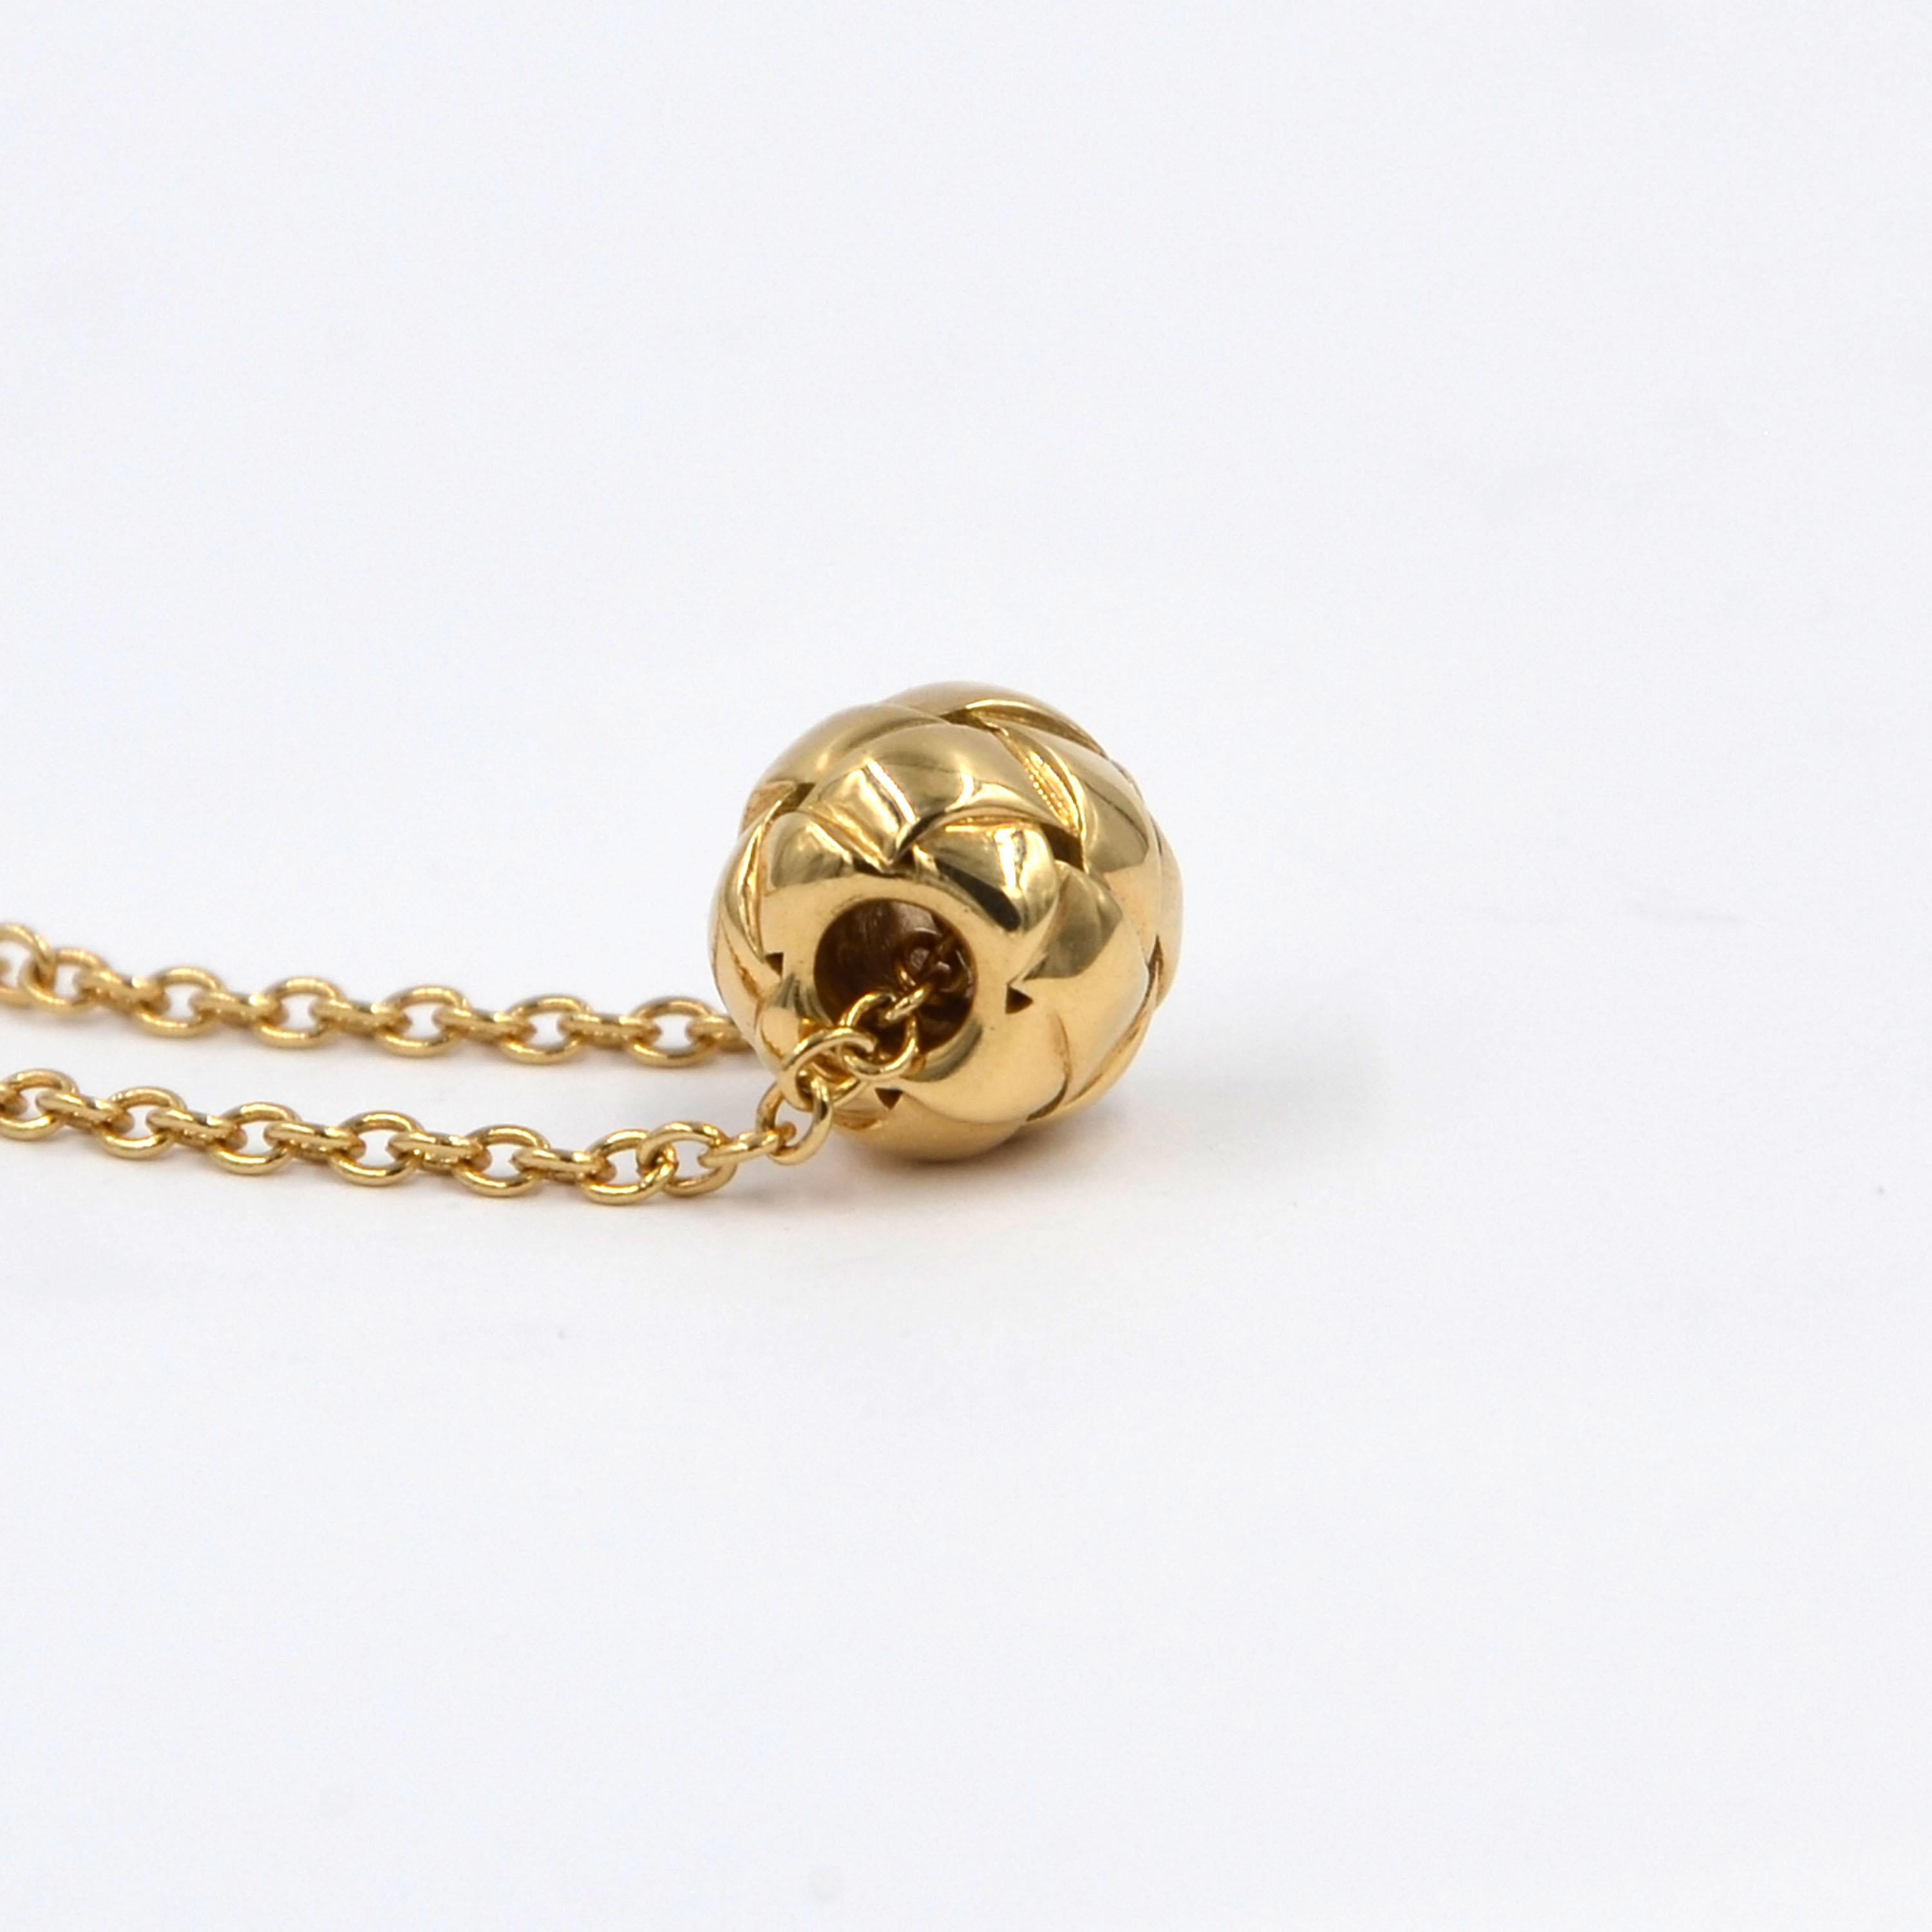 18kt Gelbgold Kleine Gold Halskette Dedalo Collection'S von Garavelli
Dicke der Verstärkung mm 6
Die Halskette ist 44cm lang mit einer Schleife bei 39cm
18kt GELB GOLD gr : 4.7
Es können auch alle Pavè-Diamanten hergestellt werden 